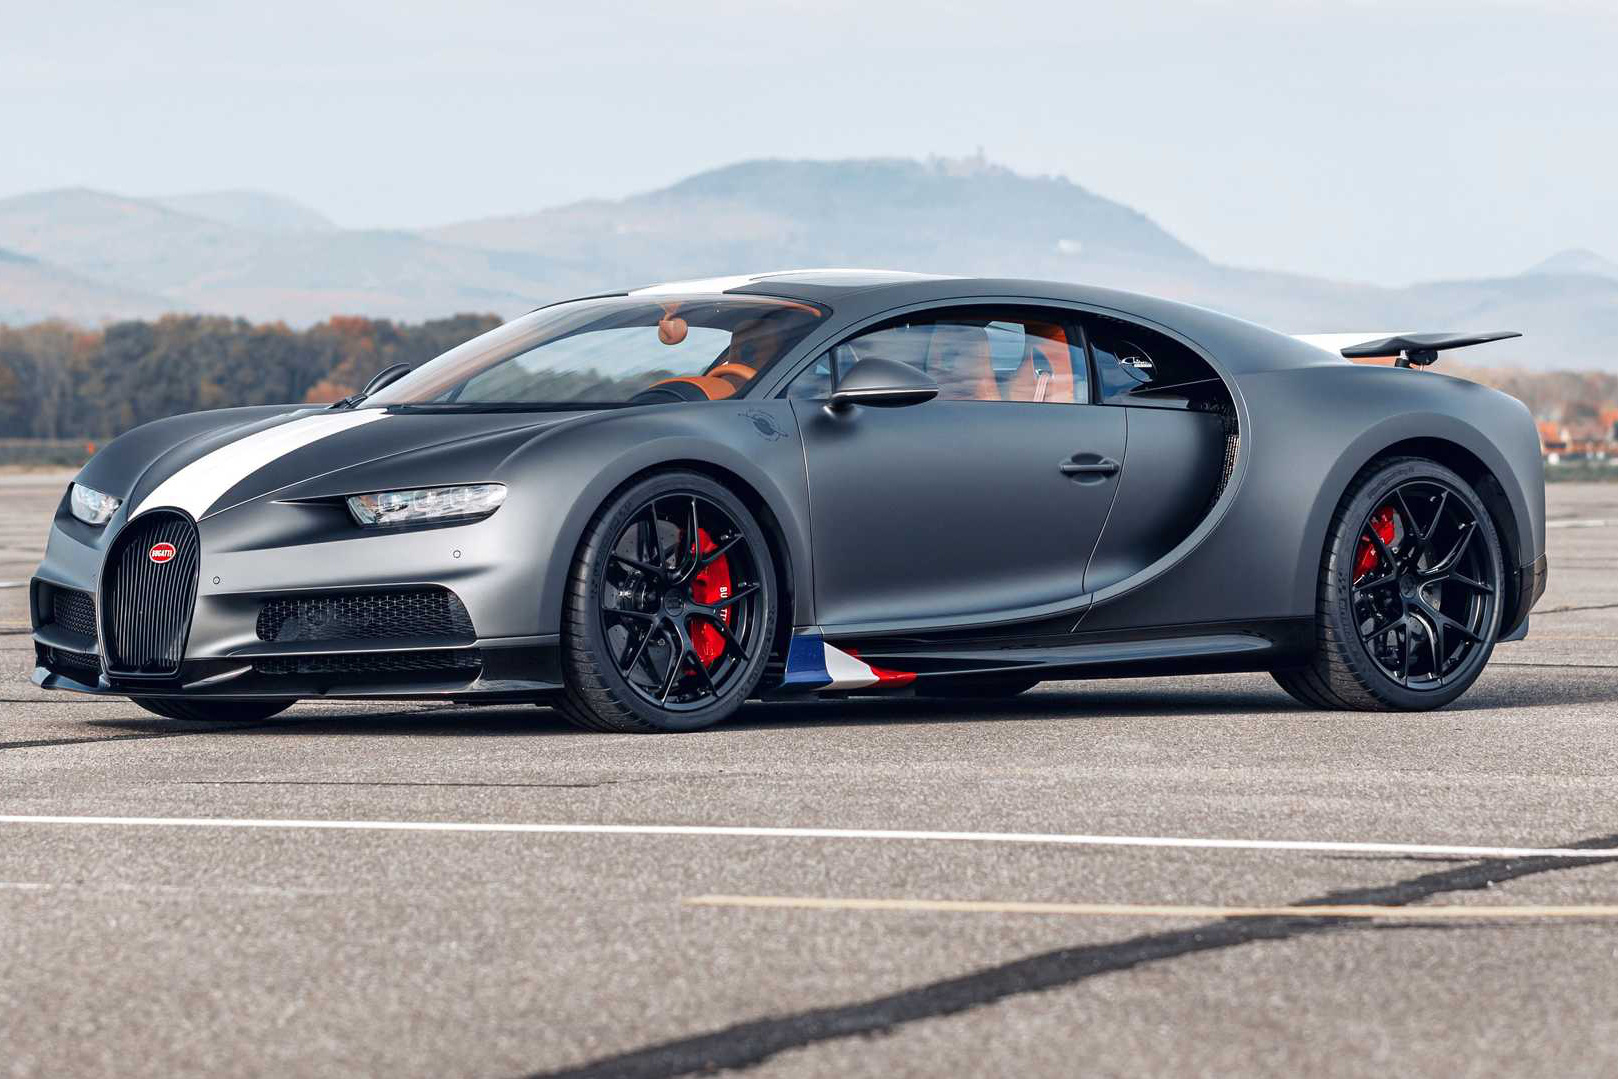 Ra mắt Bugatti Chiron Sport bản đặc biệt cho đại gia thích lái máy bay: Chưa thuế mà cũng đã 3,4 triệu USD